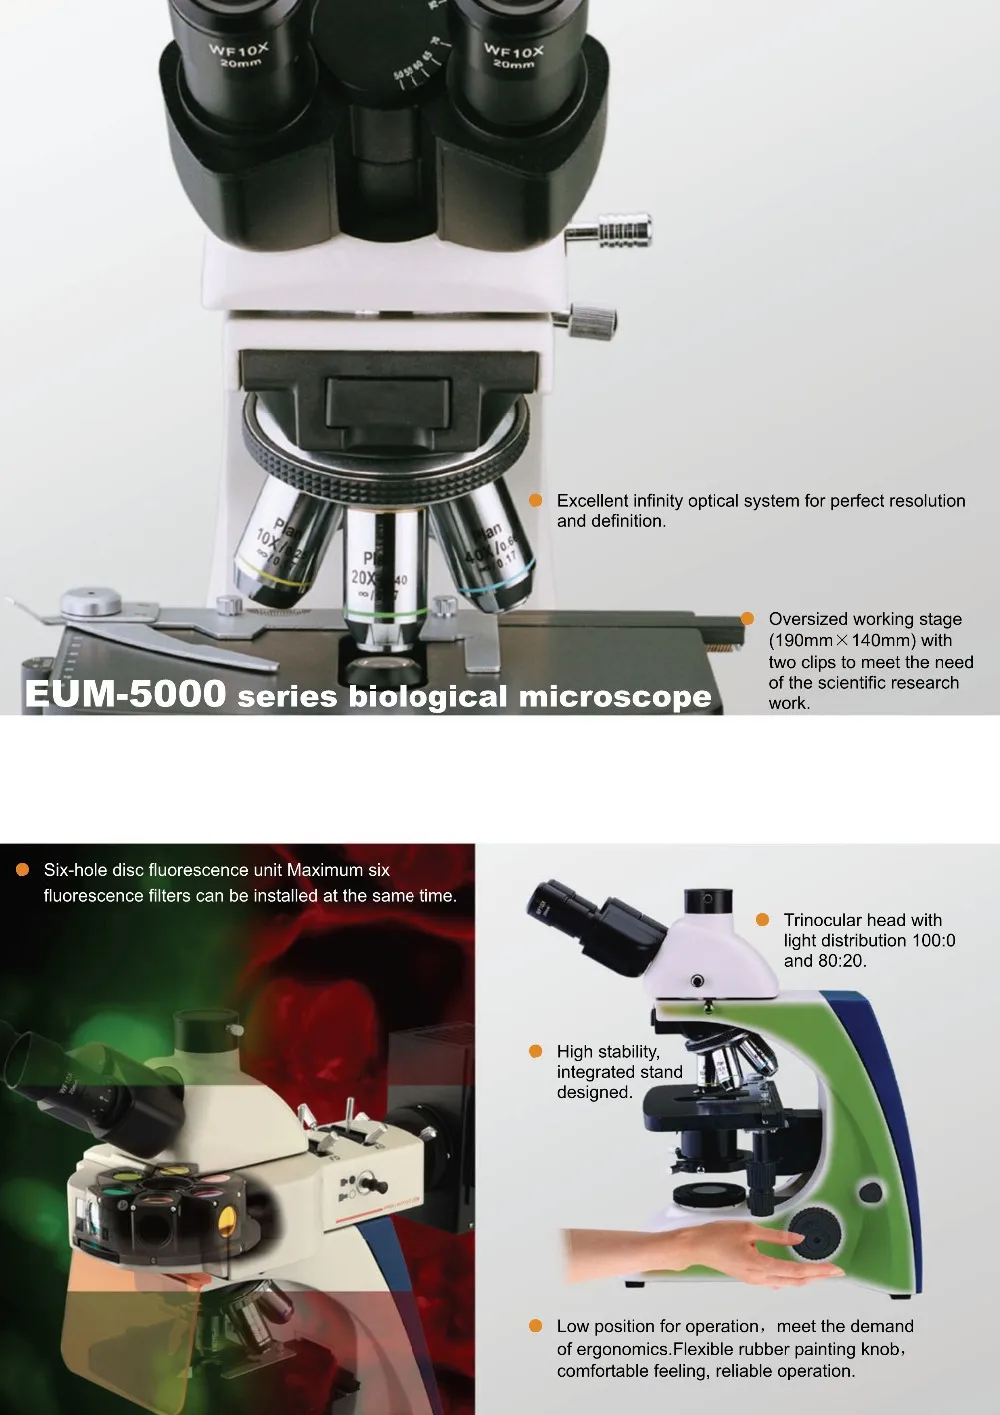 Тринокулярный LED флуоресценции микроскоп EUM-5000FLED со светодиодной возбуждения флуоресценции